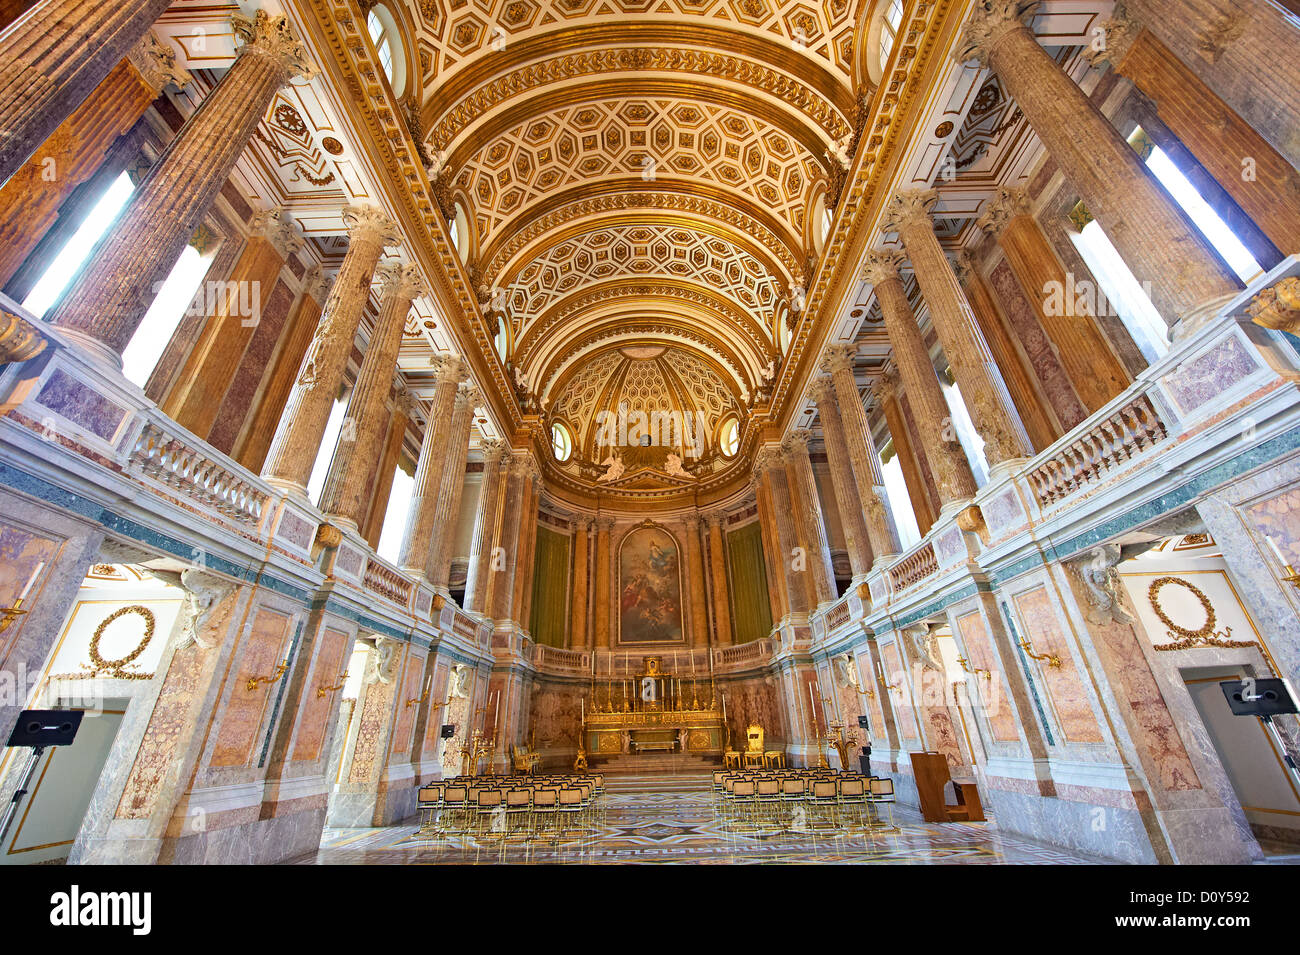 La chapelle baroque des Rois Bourbon de Naples Palais Royal de Caserte, Italie. Banque D'Images